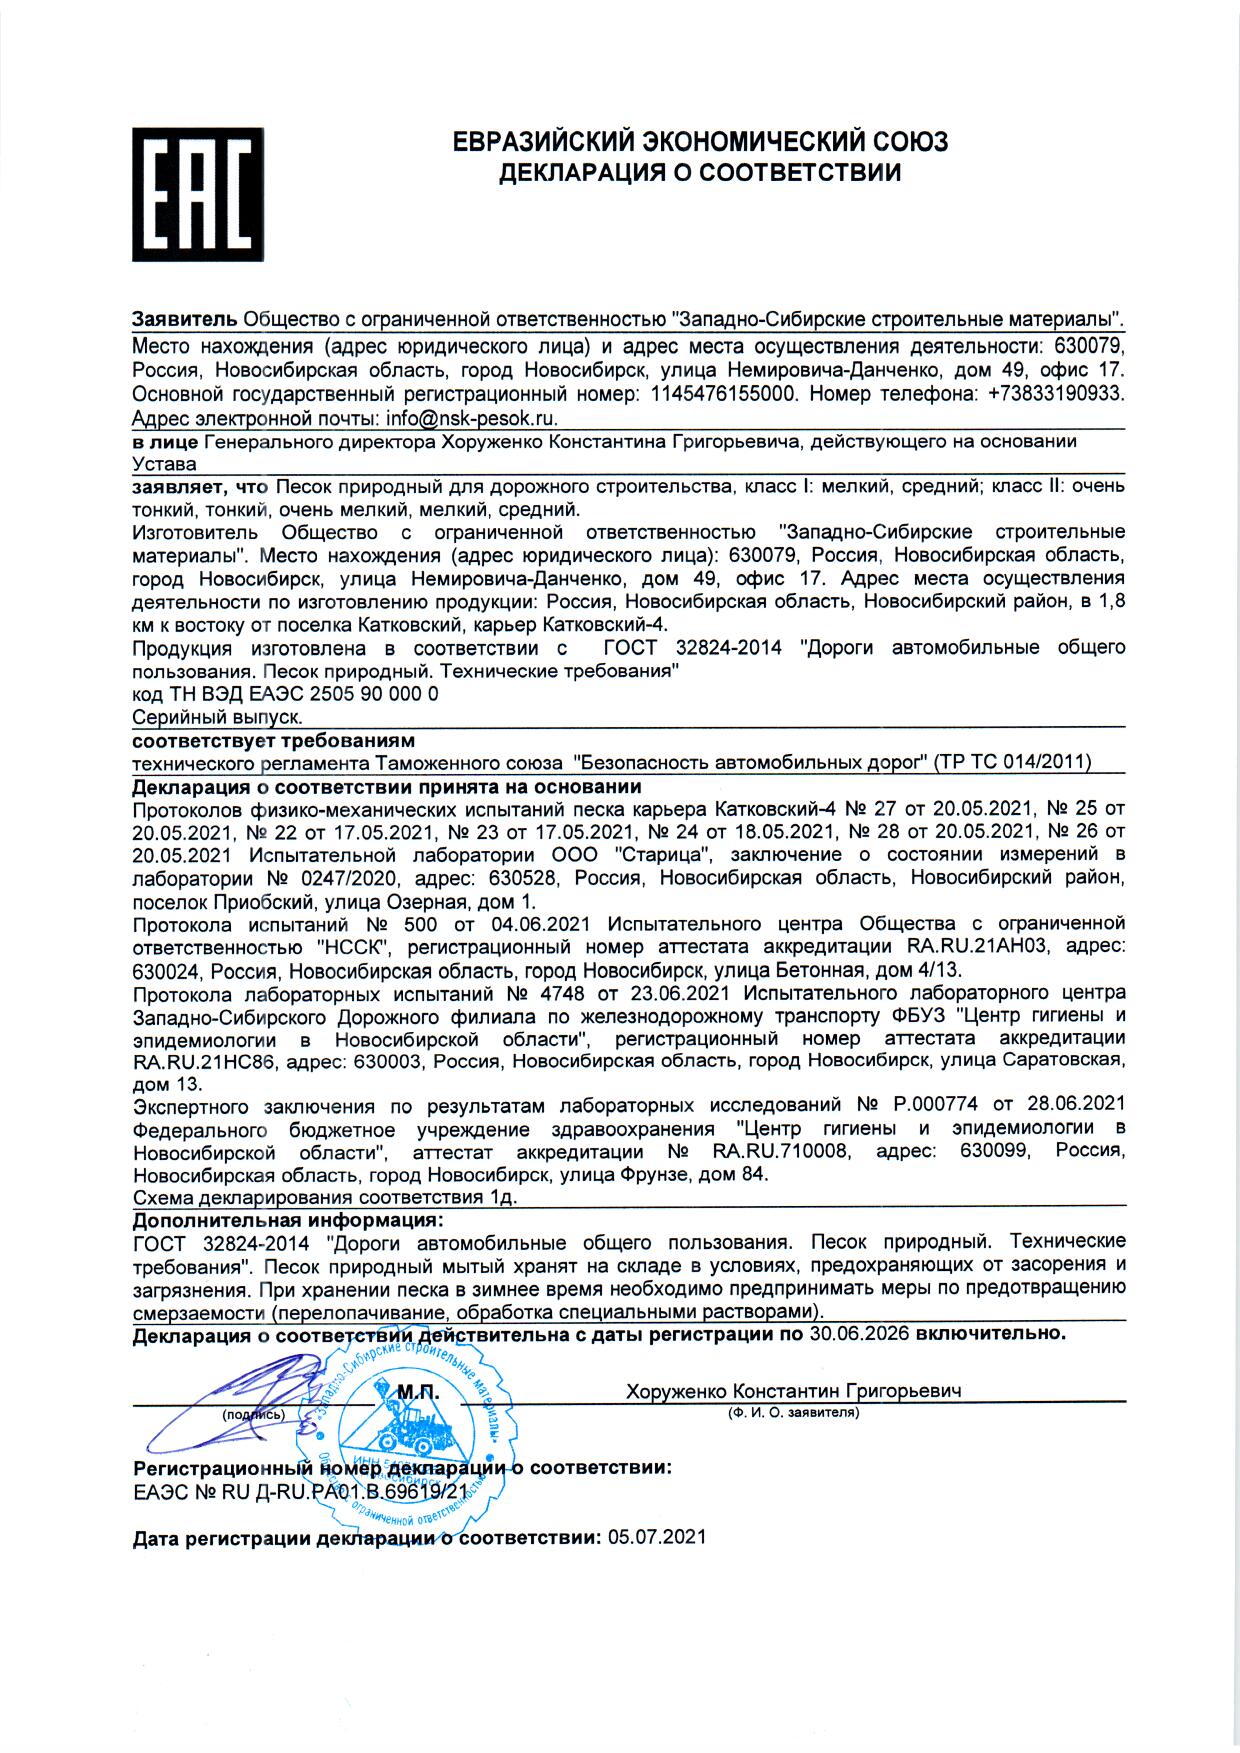 Декларация песок ЕЭС 2021-2026 Катковский-4